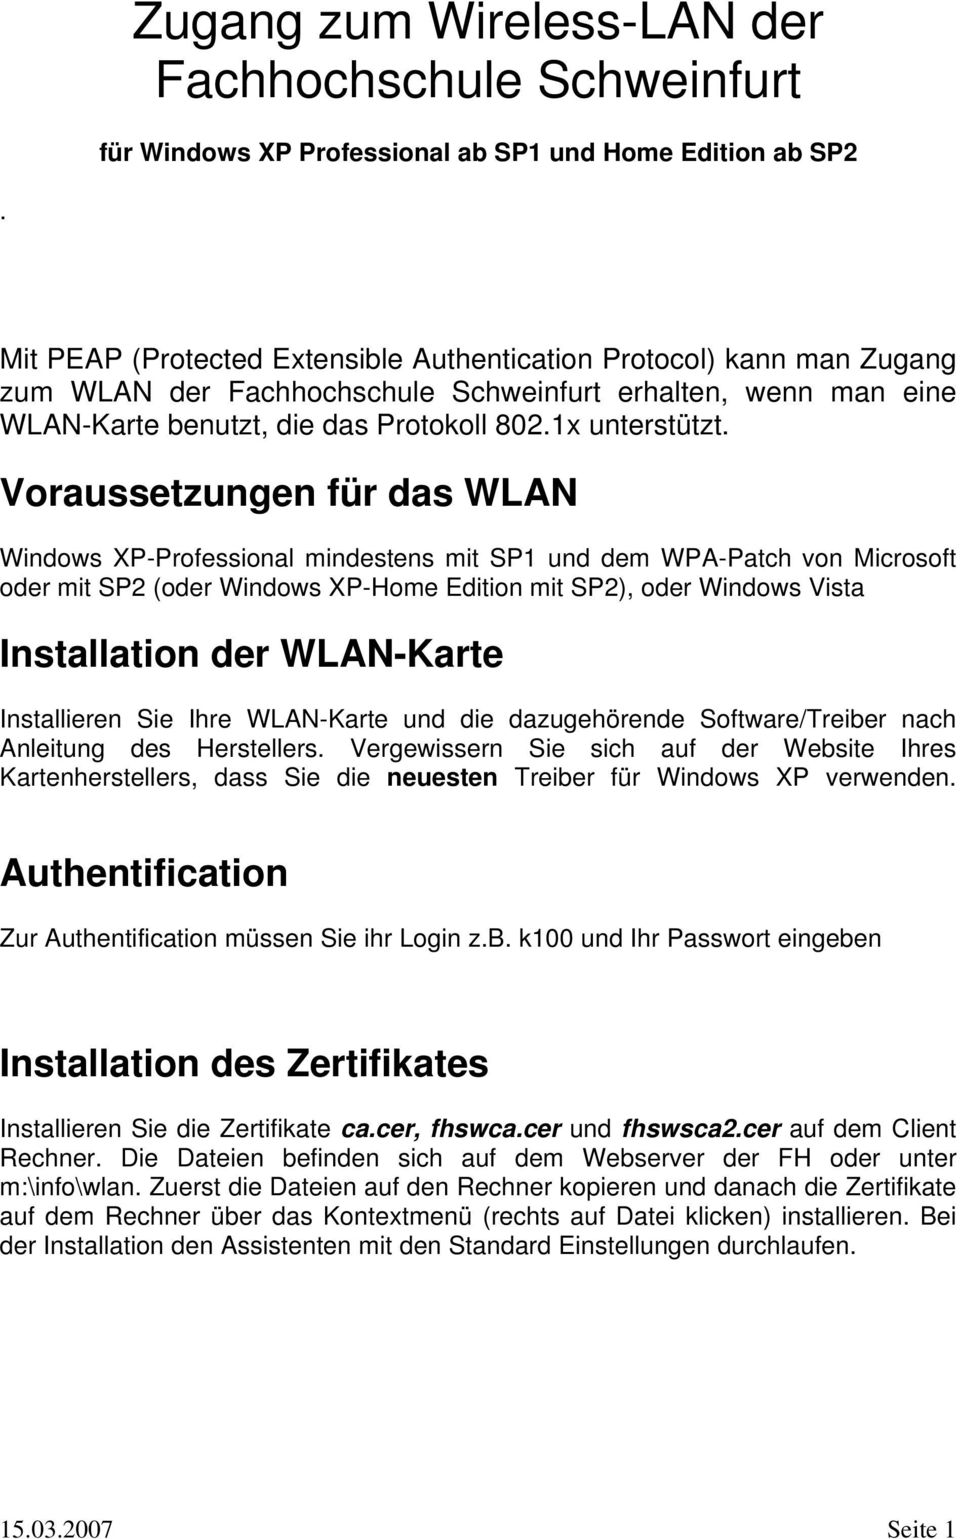 Voraussetzungen für das WLAN Windows XP-Professional mindestens mit SP1 und dem WPA-Patch von Microsoft oder mit SP2 (oder Windows XP-Home Edition mit SP2), oder Windows Vista Installation der